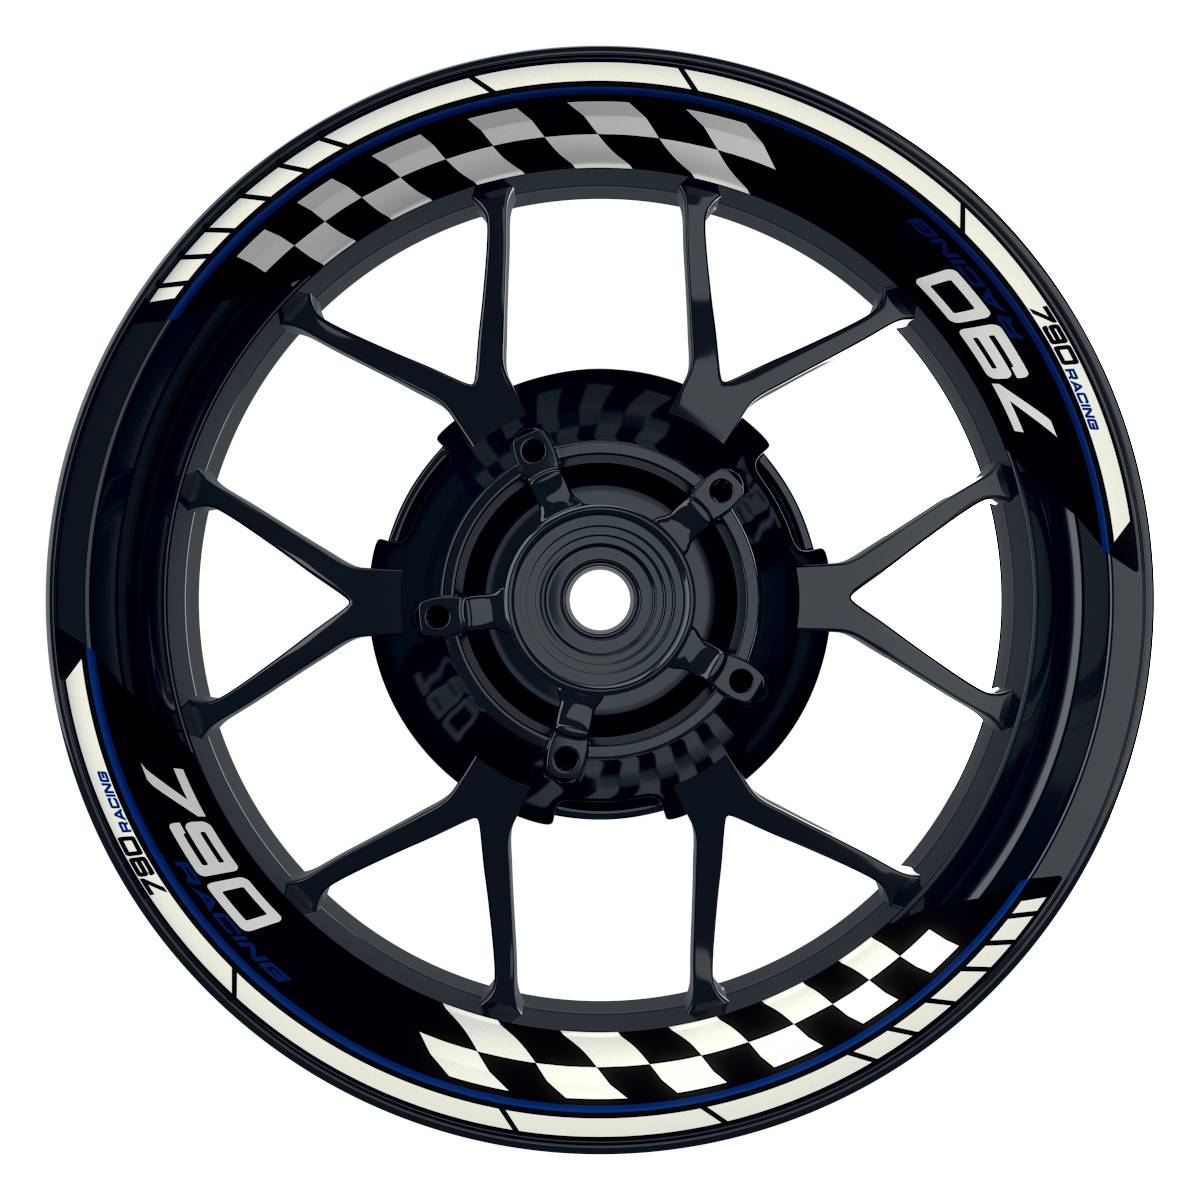 KTM Racing 790 Grid schwarz blau Frontansicht